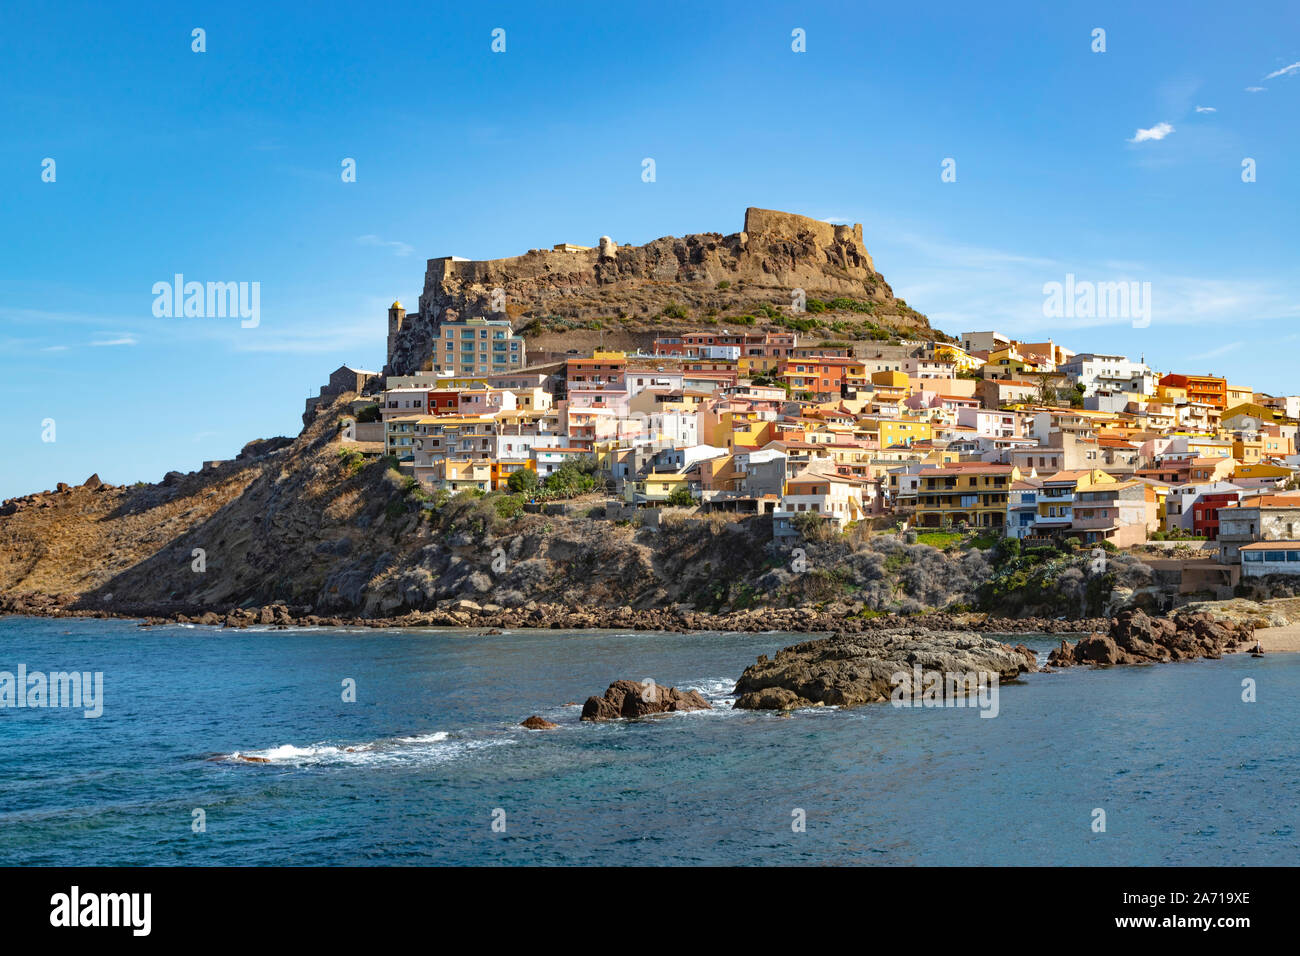 Vista di Castelsardo con la sua colorata architettura e fortezza, situato sul Golfo dell'Asinara, Sassari, Sardegna, Italia. Foto Stock